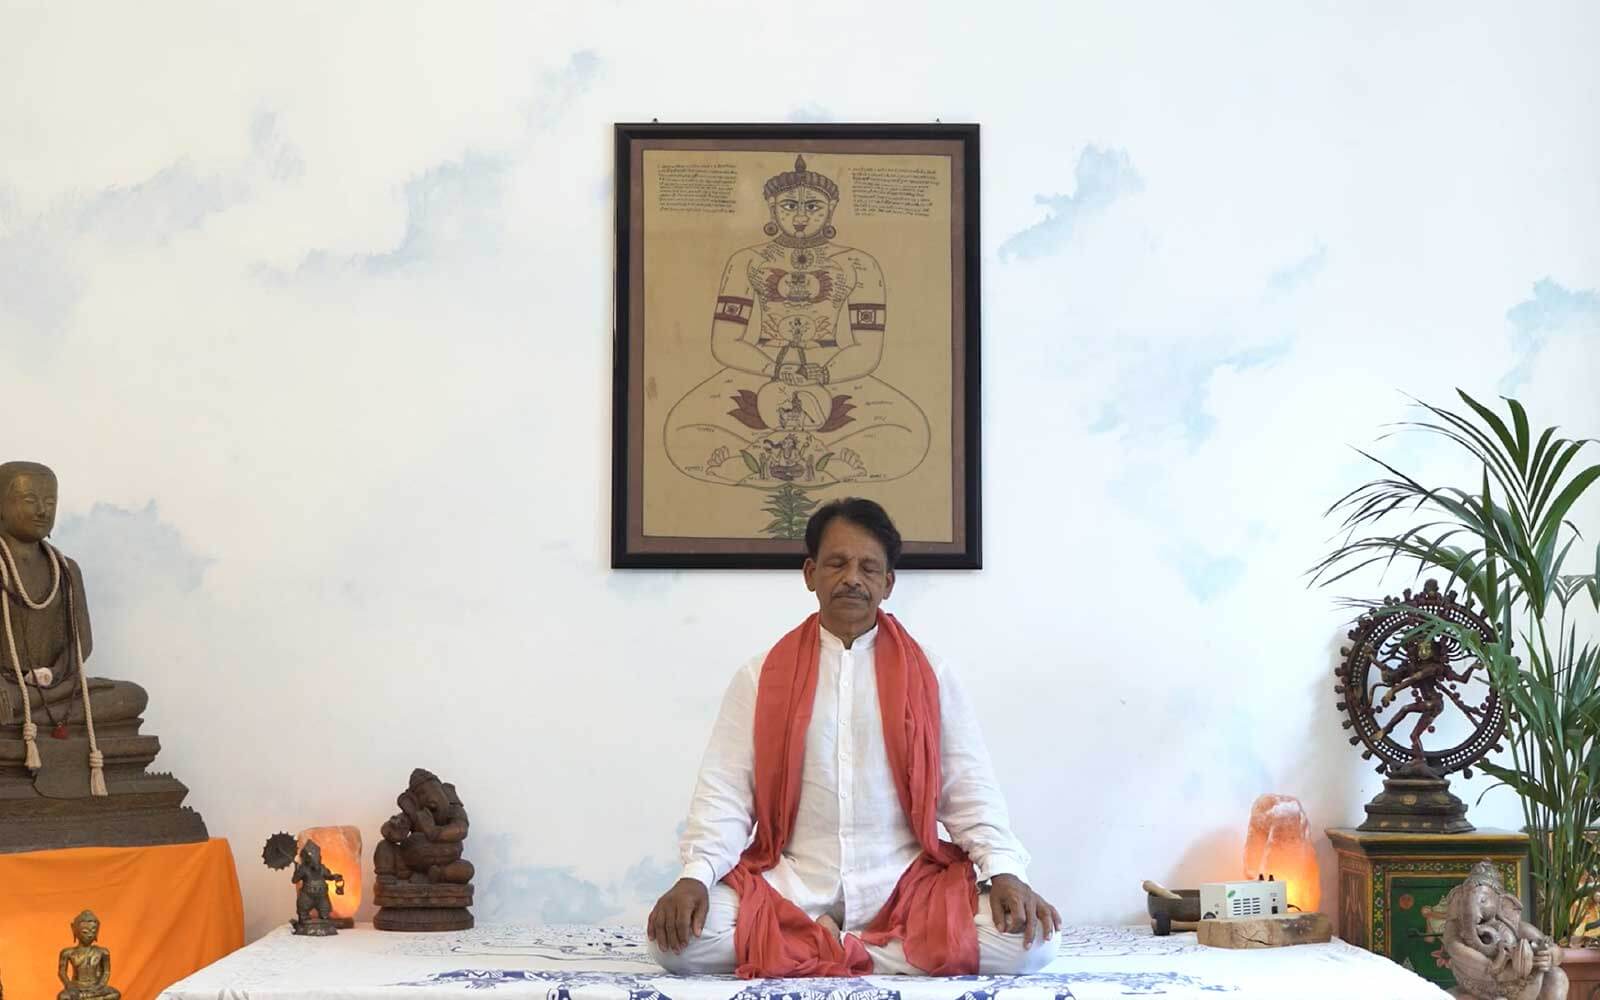 Il maestro James Eruppakkattu siede nella posizione del loto durante la pratica di Pranayama